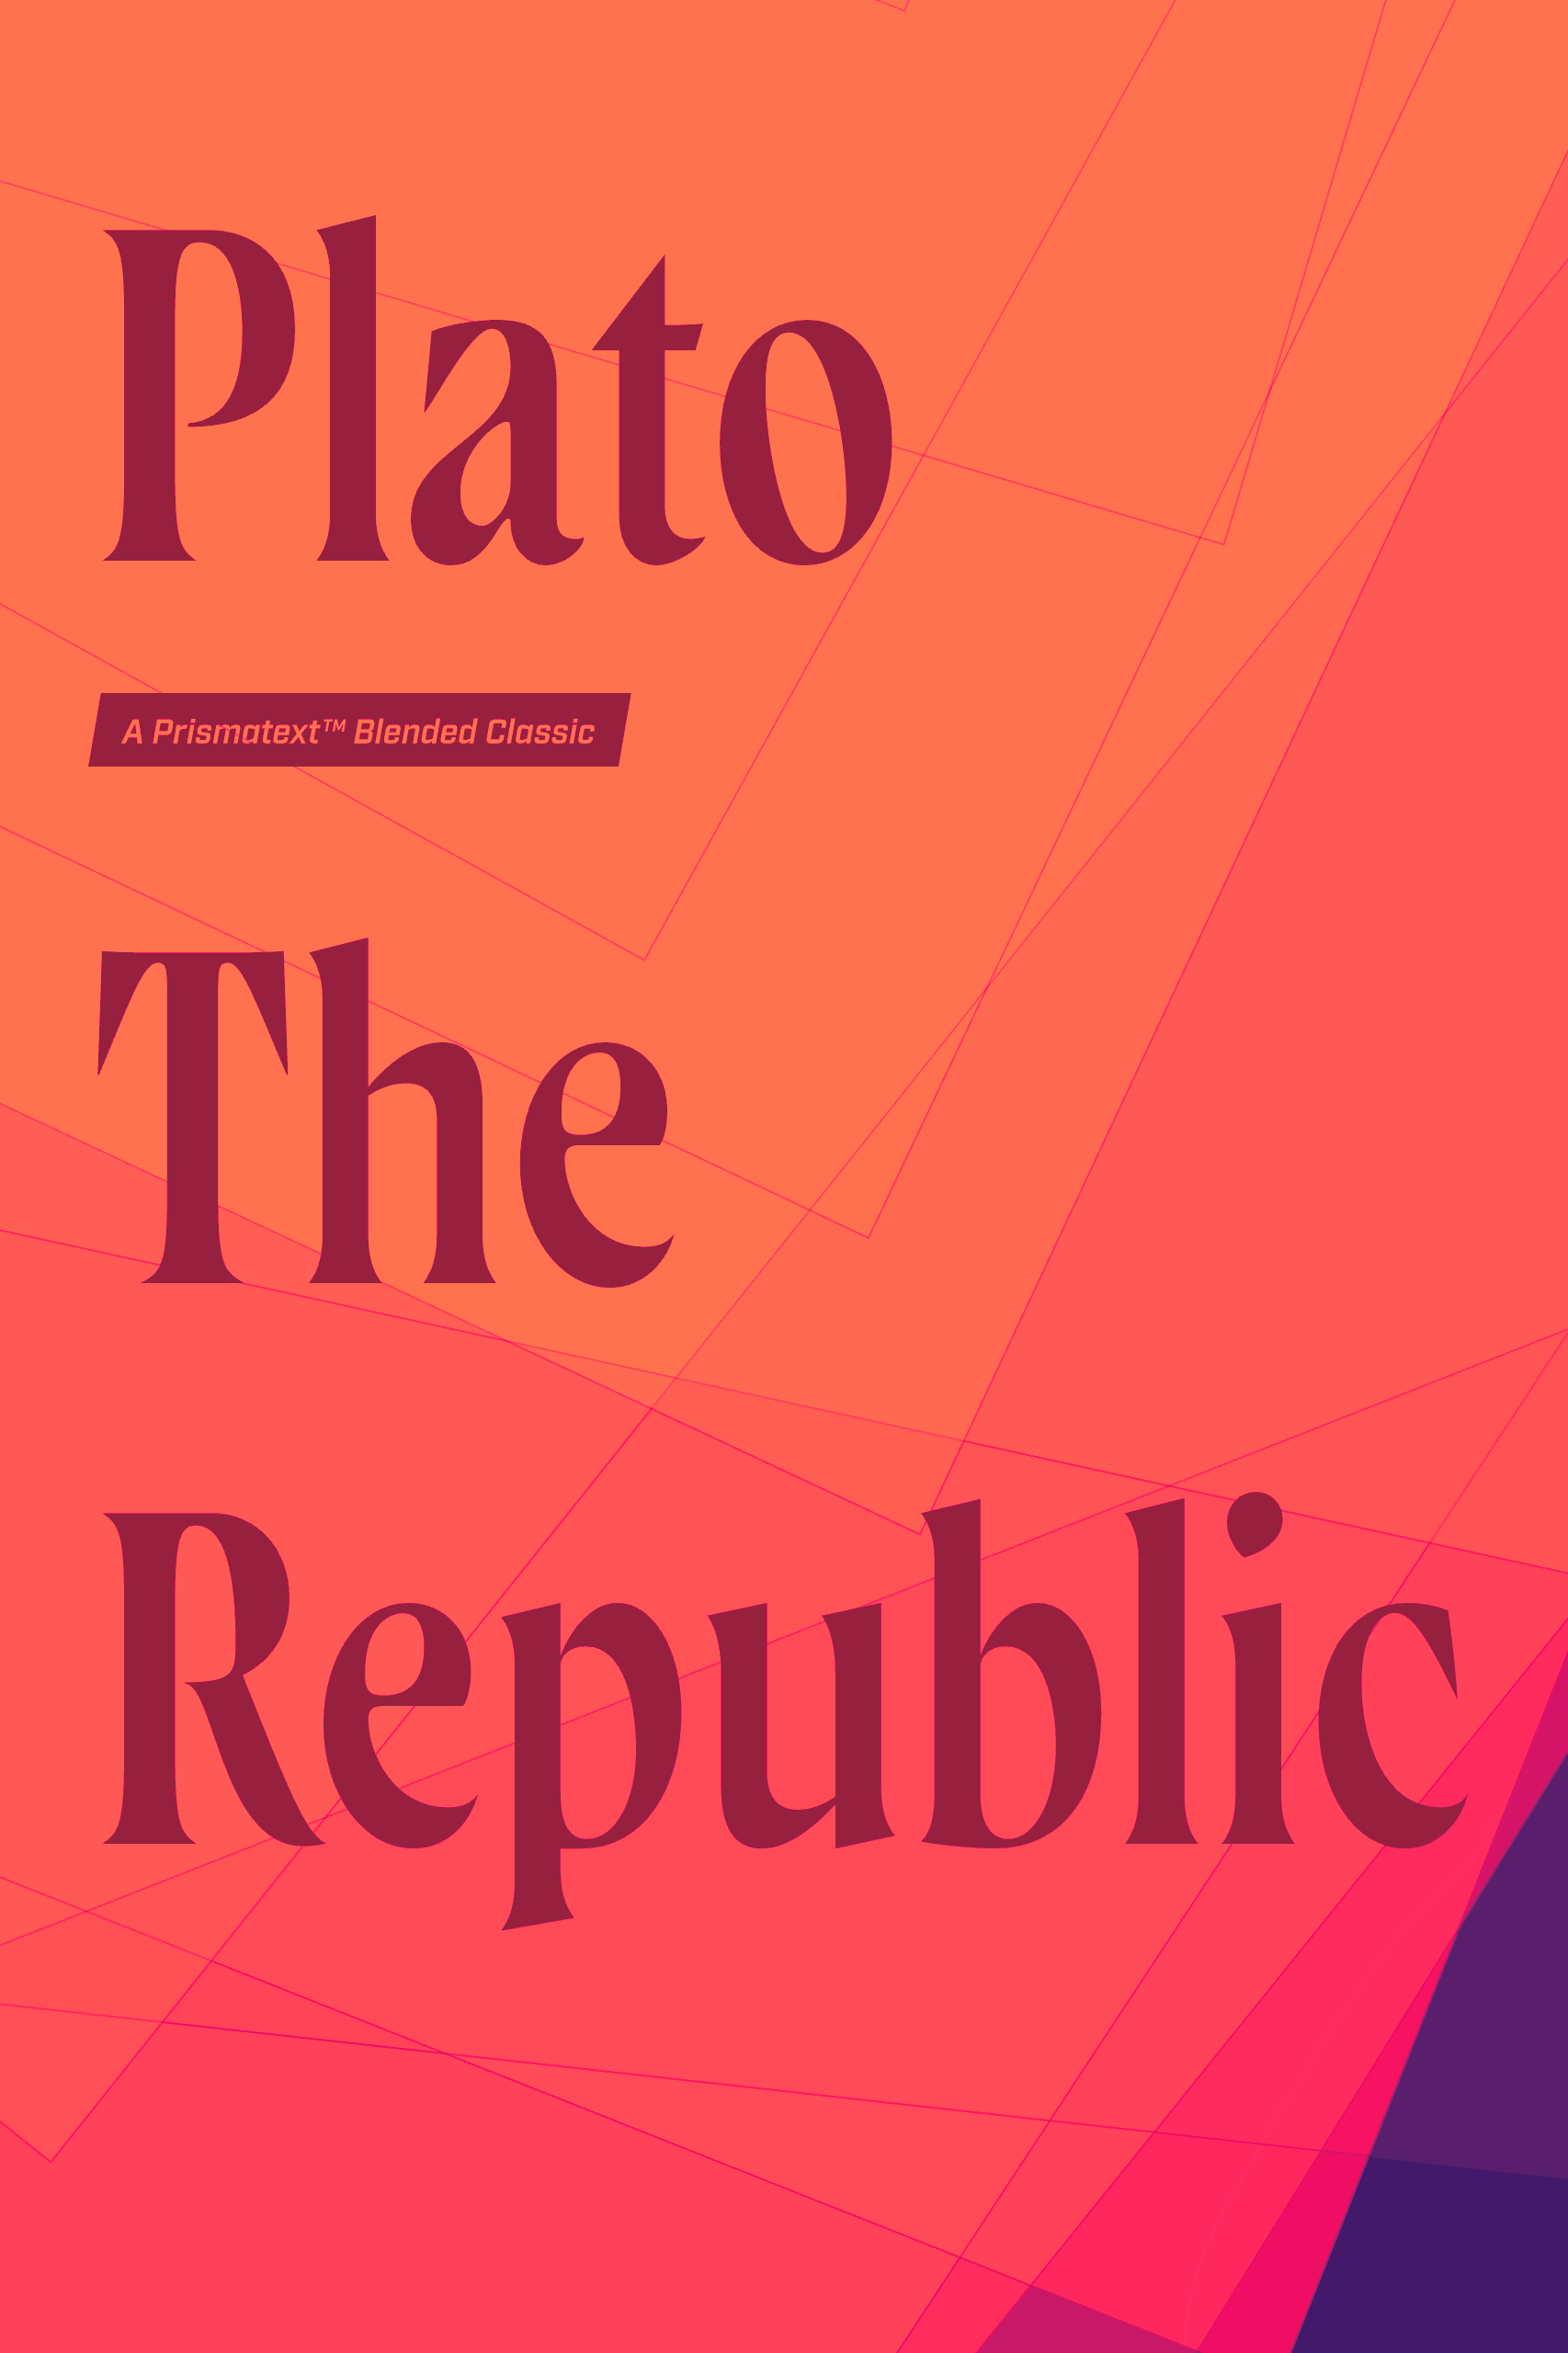 The Republic by Plato 